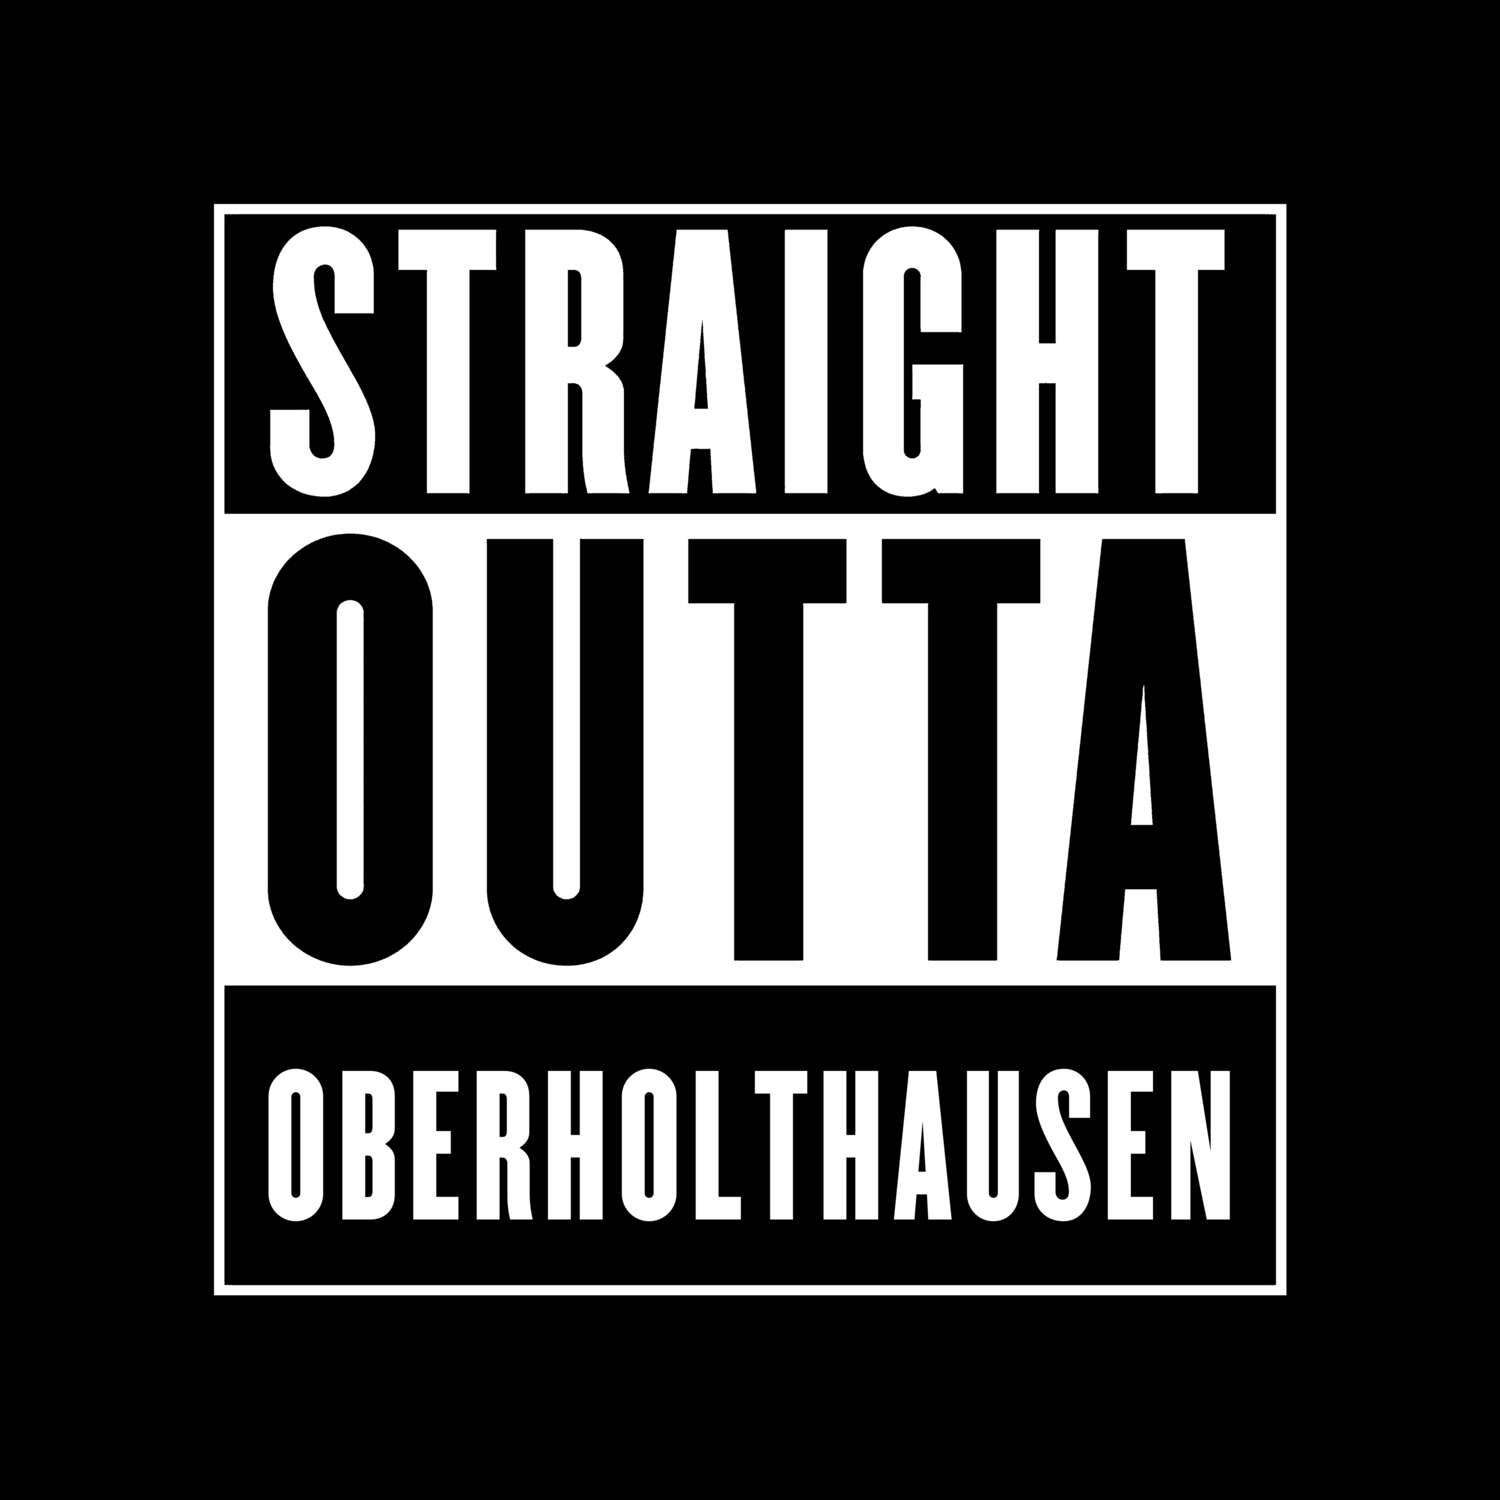 Oberholthausen T-Shirt »Straight Outta«